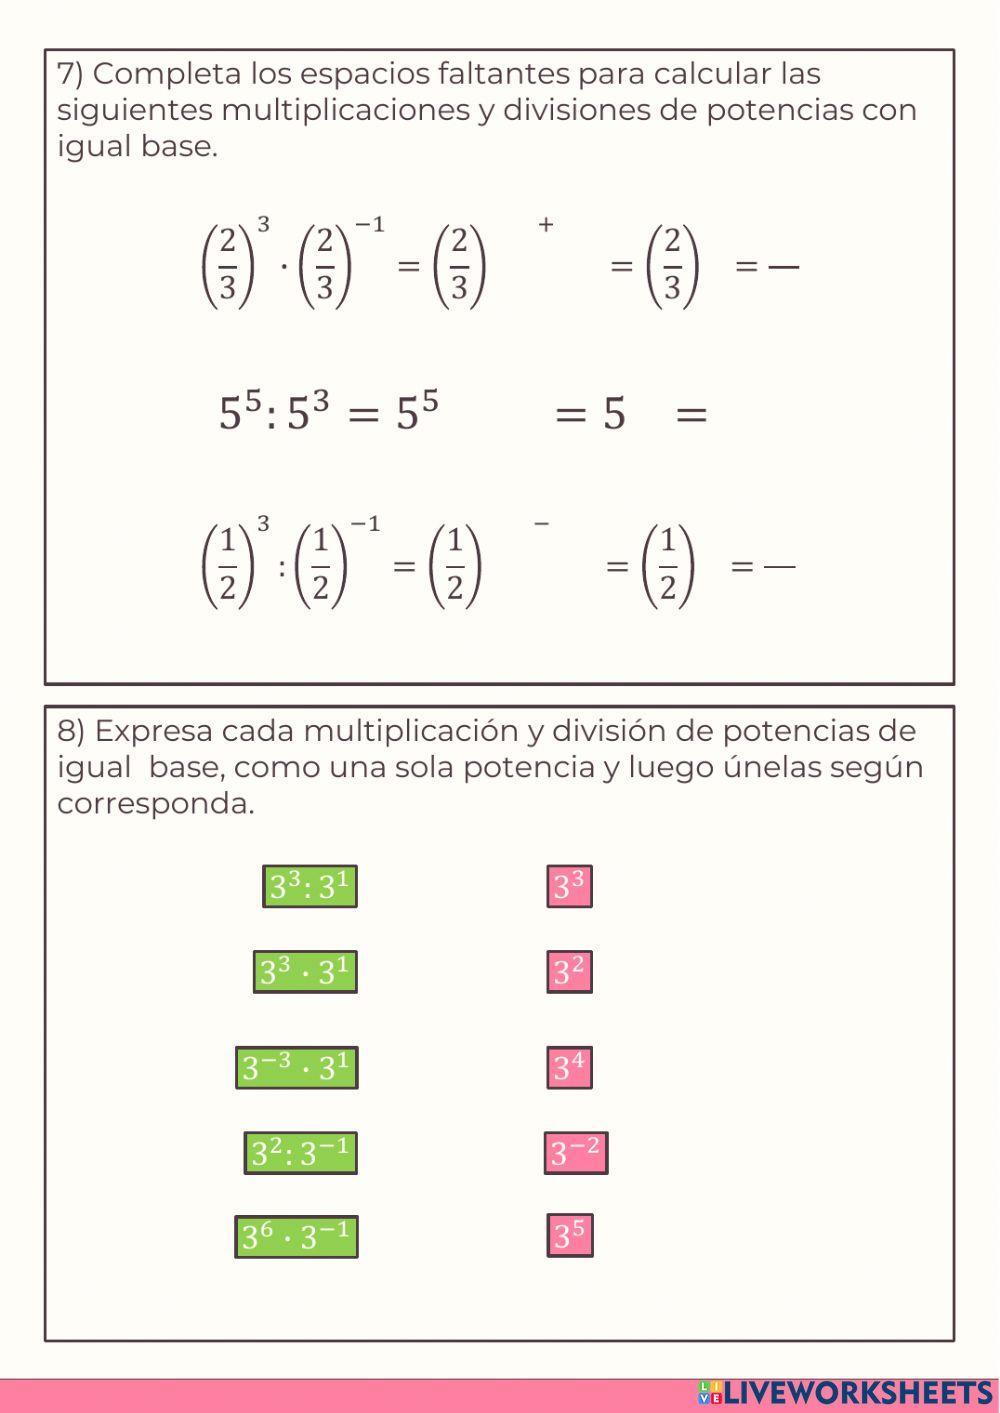 ACTIVIDAD 8 - Multiplicación y división de potencias con igual base